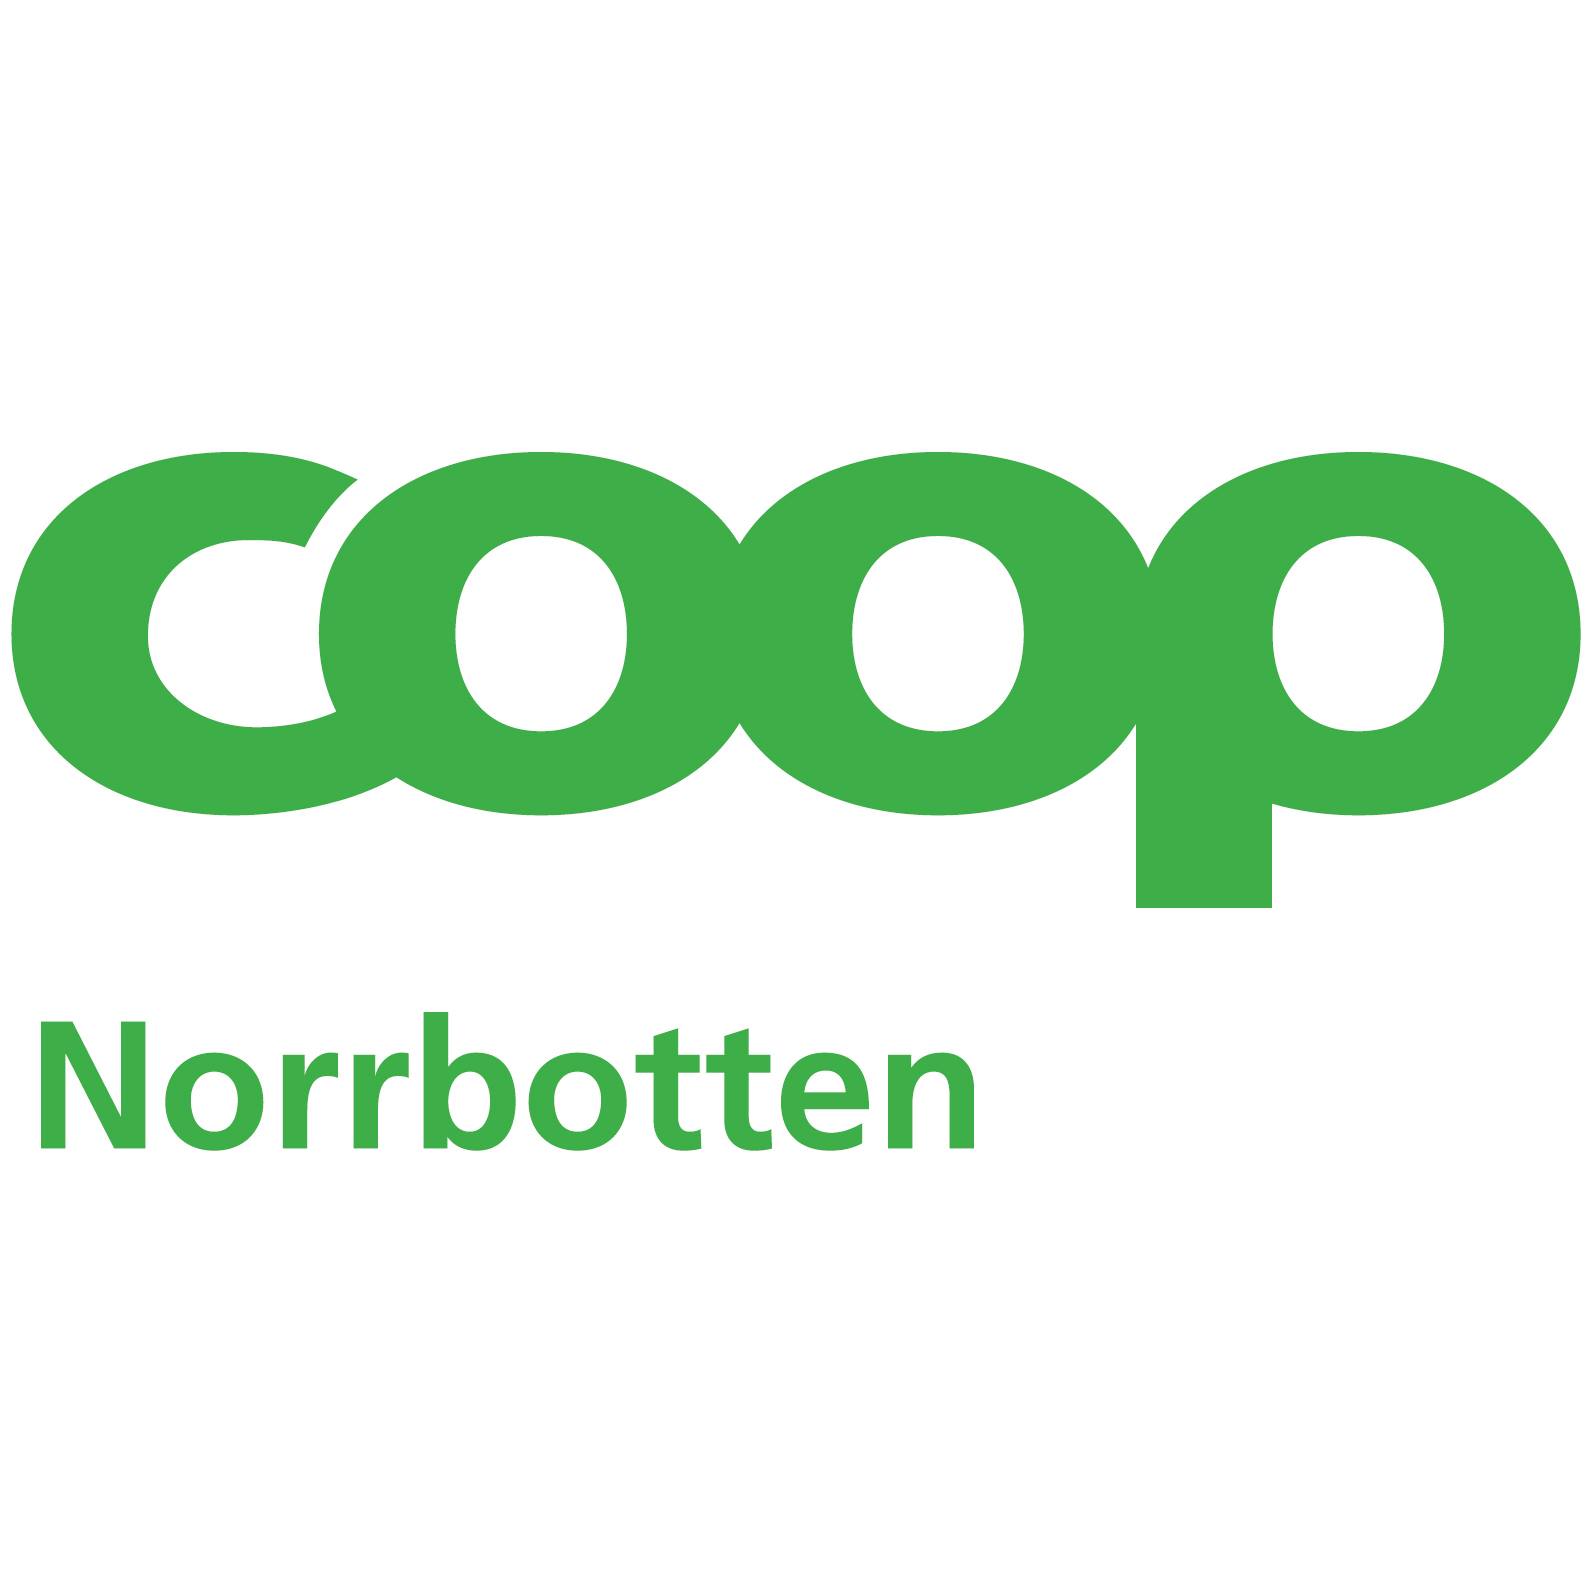 Coop-norrbotten